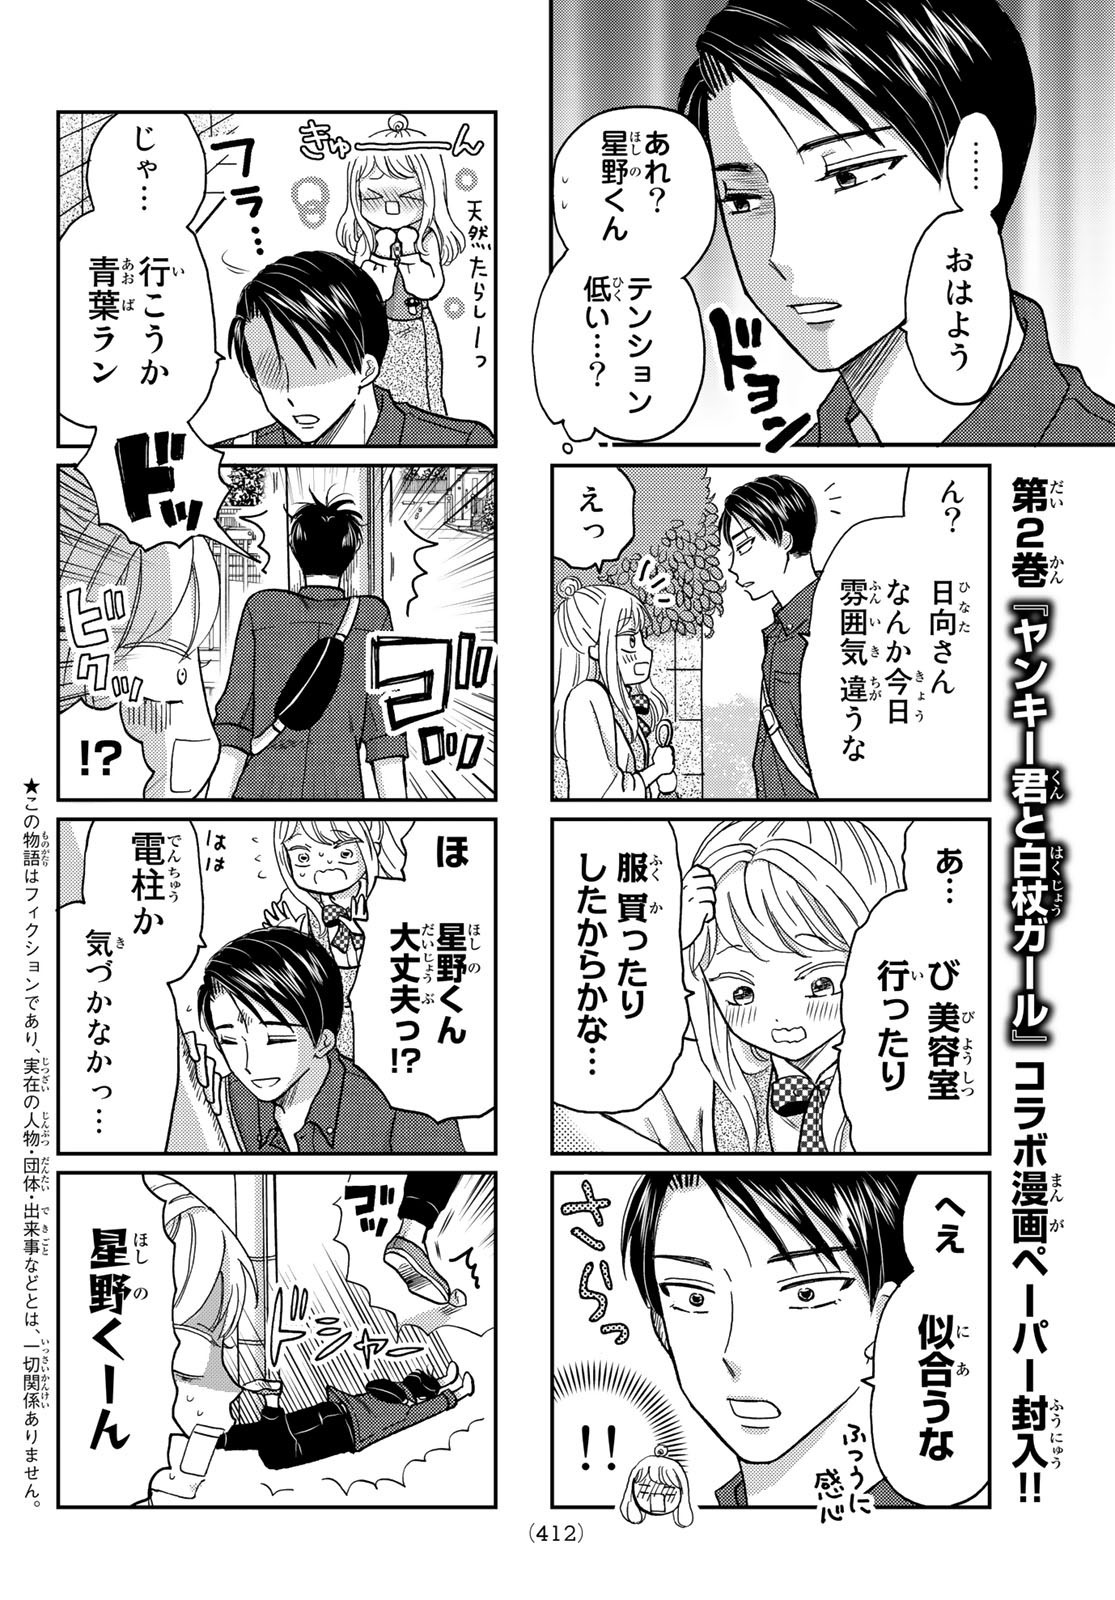 Hinata-san, Hoshino desu. - Chapter 029 - Page 2